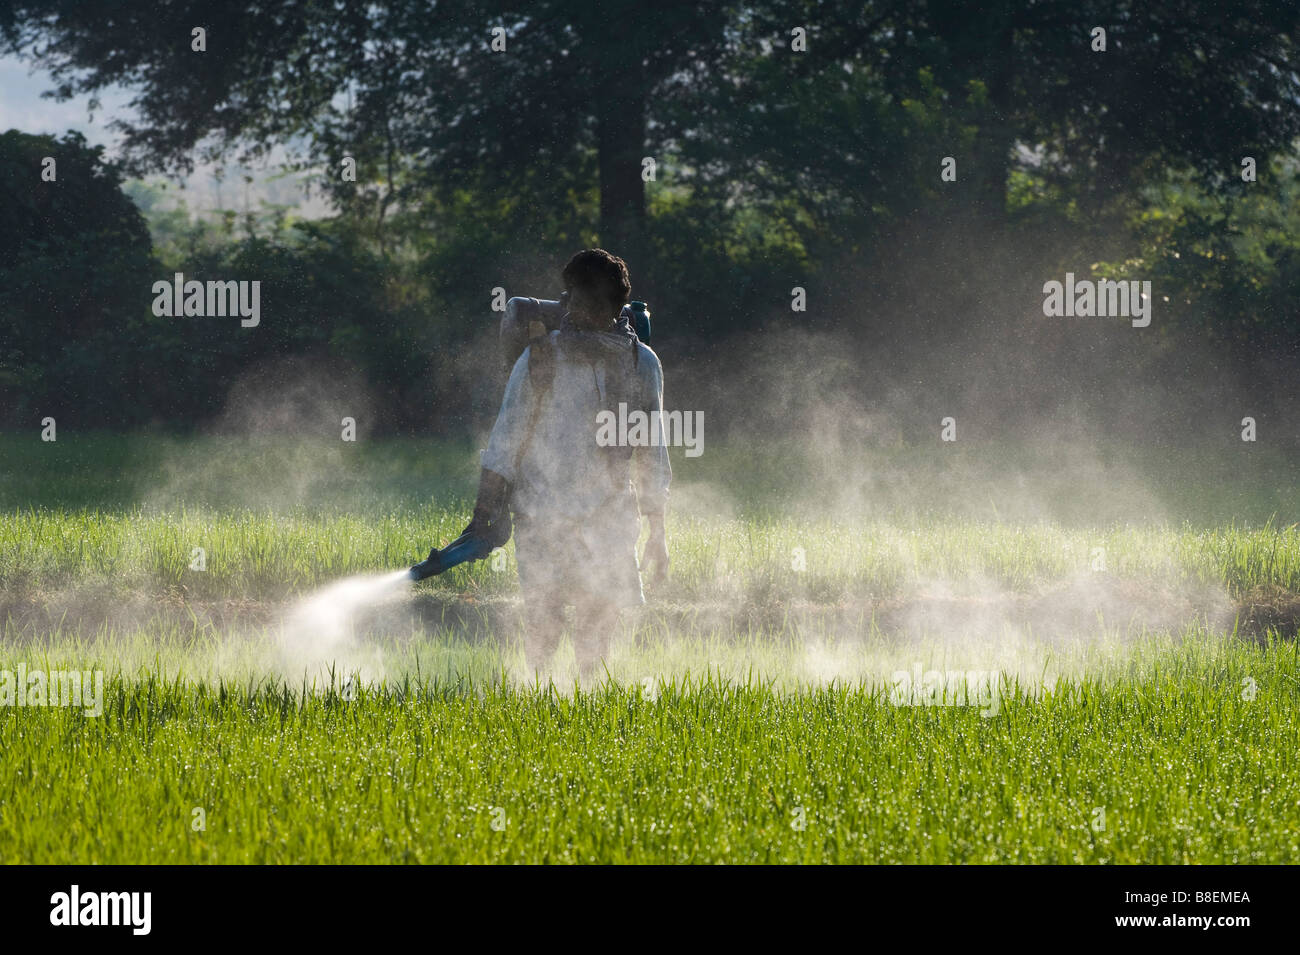 Indian man spraying a rice crop with pesticide. Andhra Pradesh, India Stock Photo